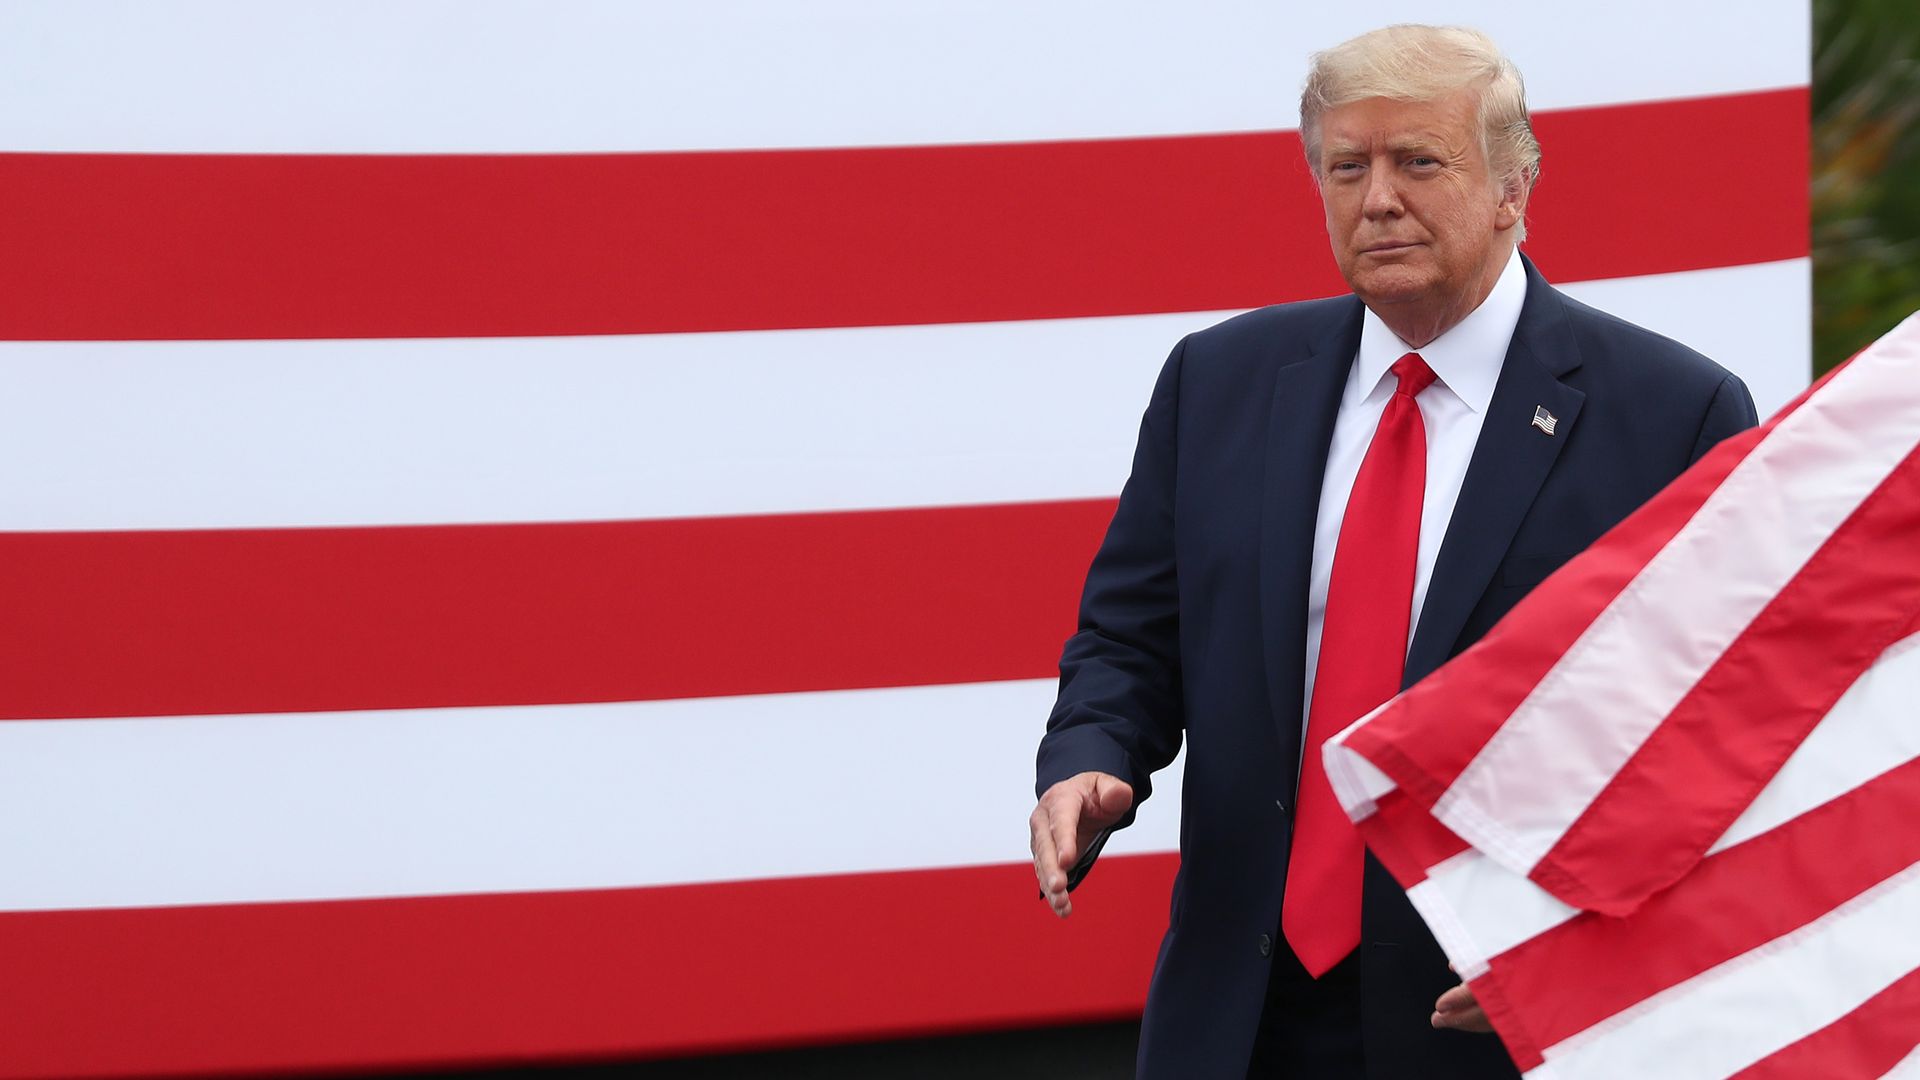 Trump walking through flags